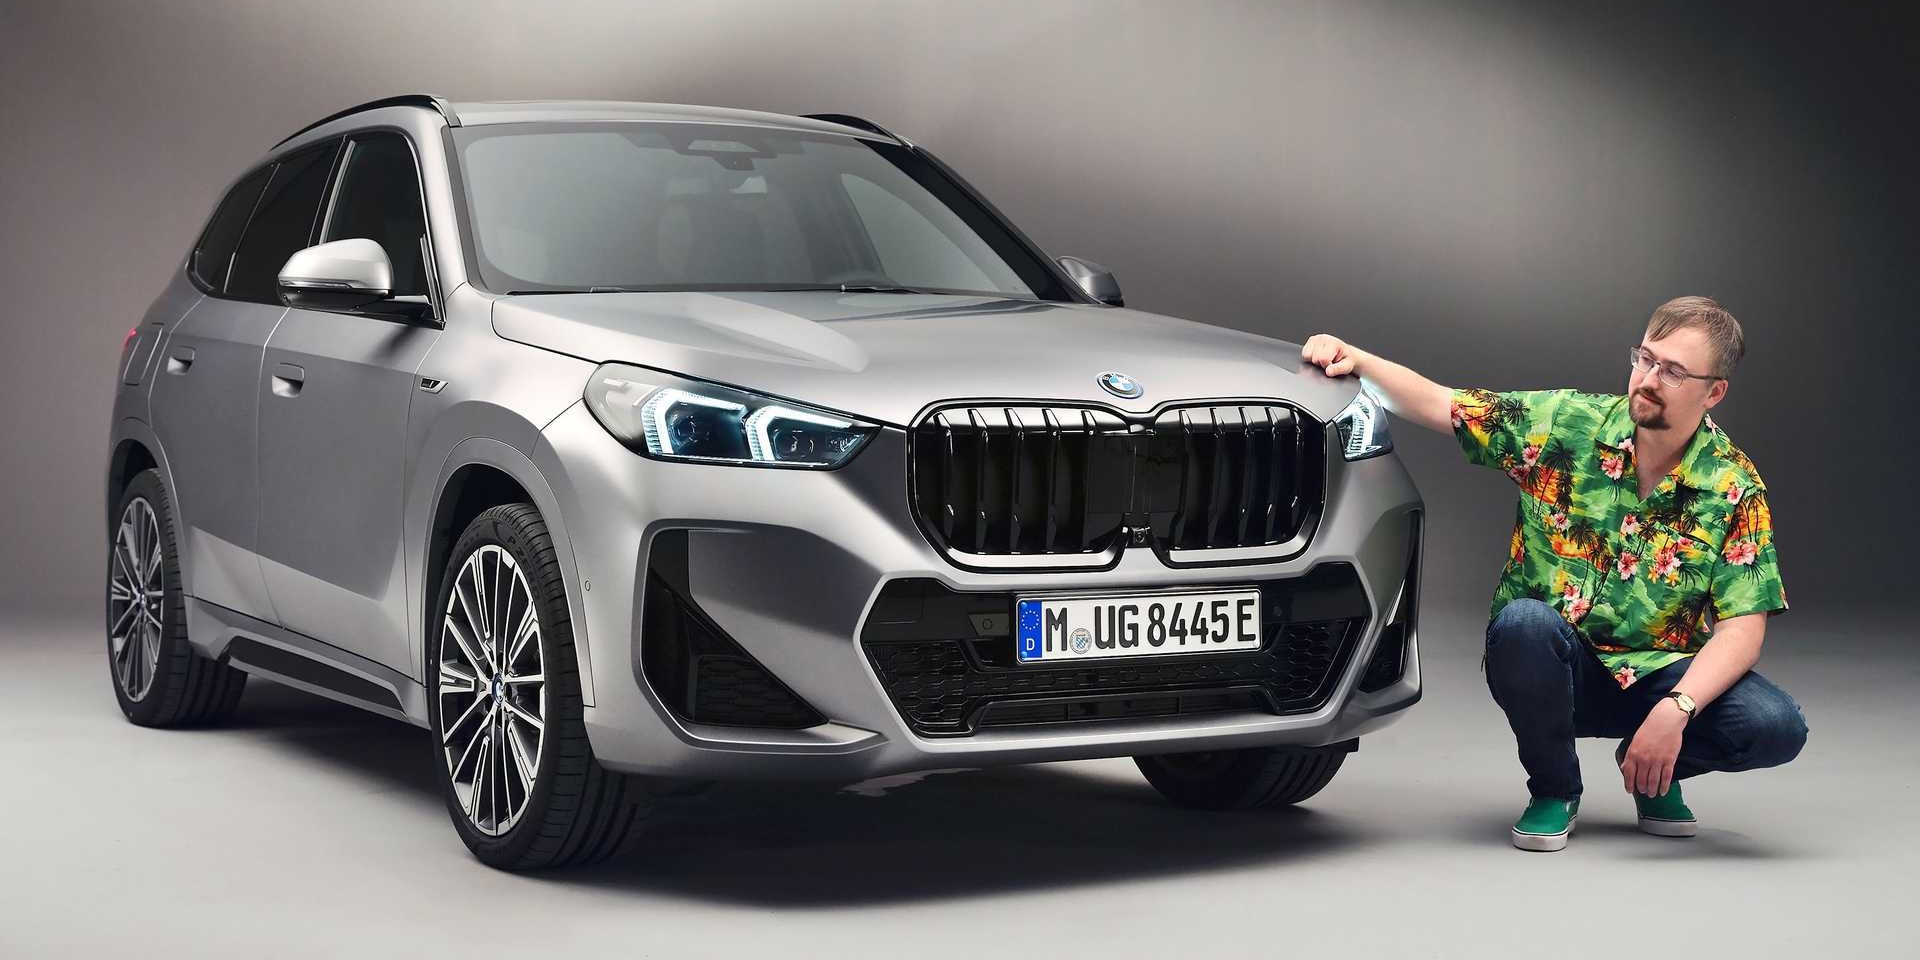 BMW X1 (2022): Alles zur Neuauflage plus Marktstart und Preis